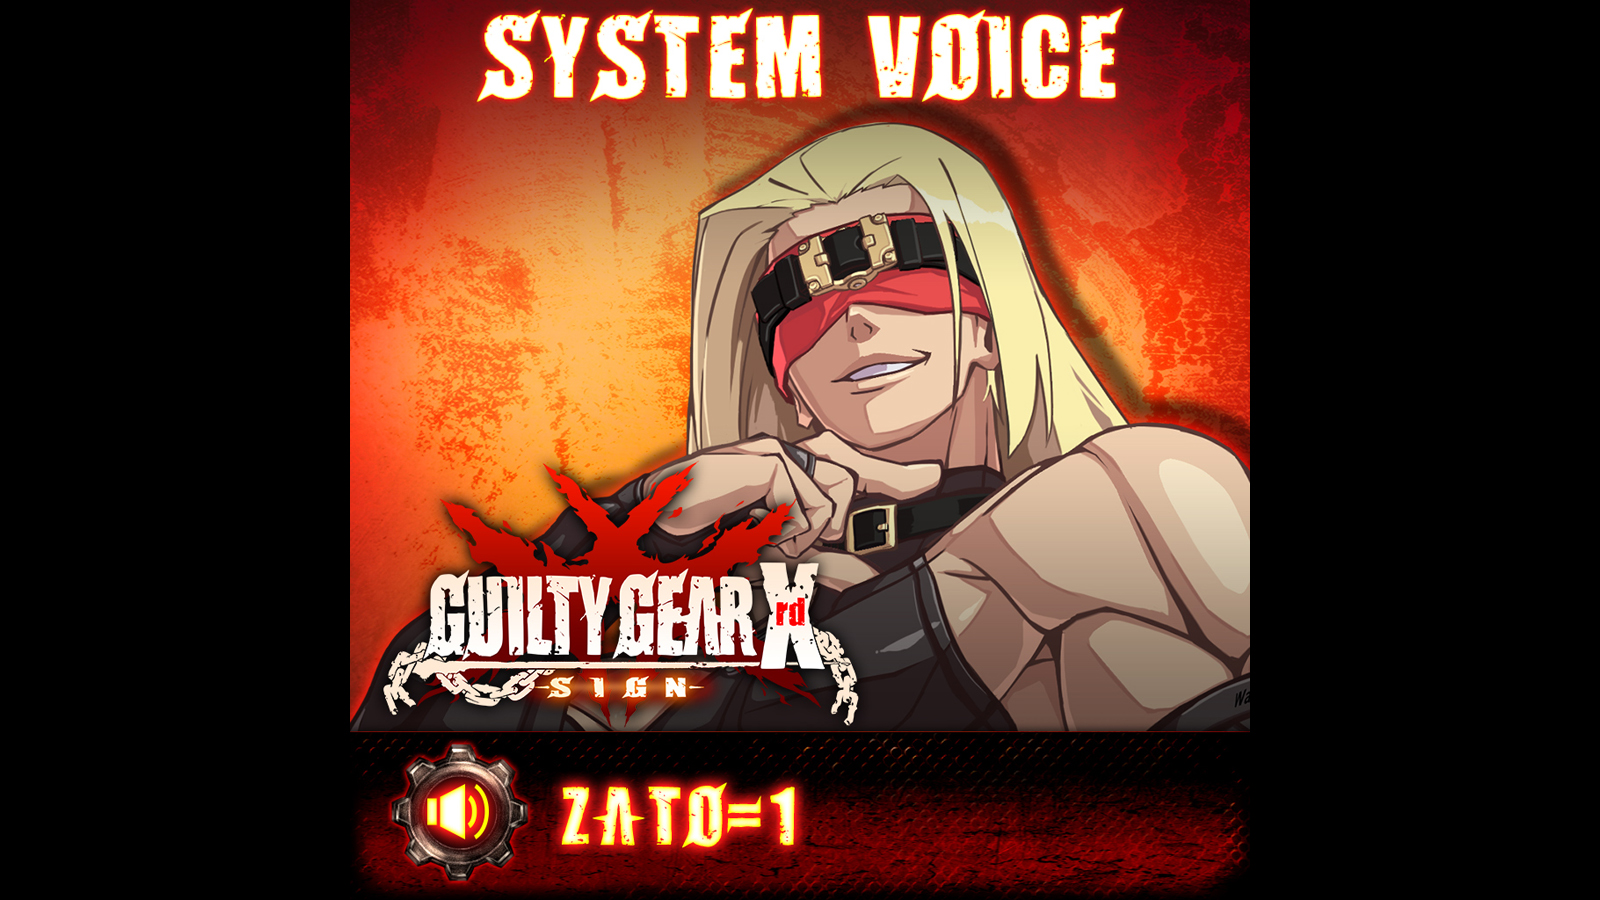 GGXrd System Voice - ZATO-1 Featured Screenshot #1